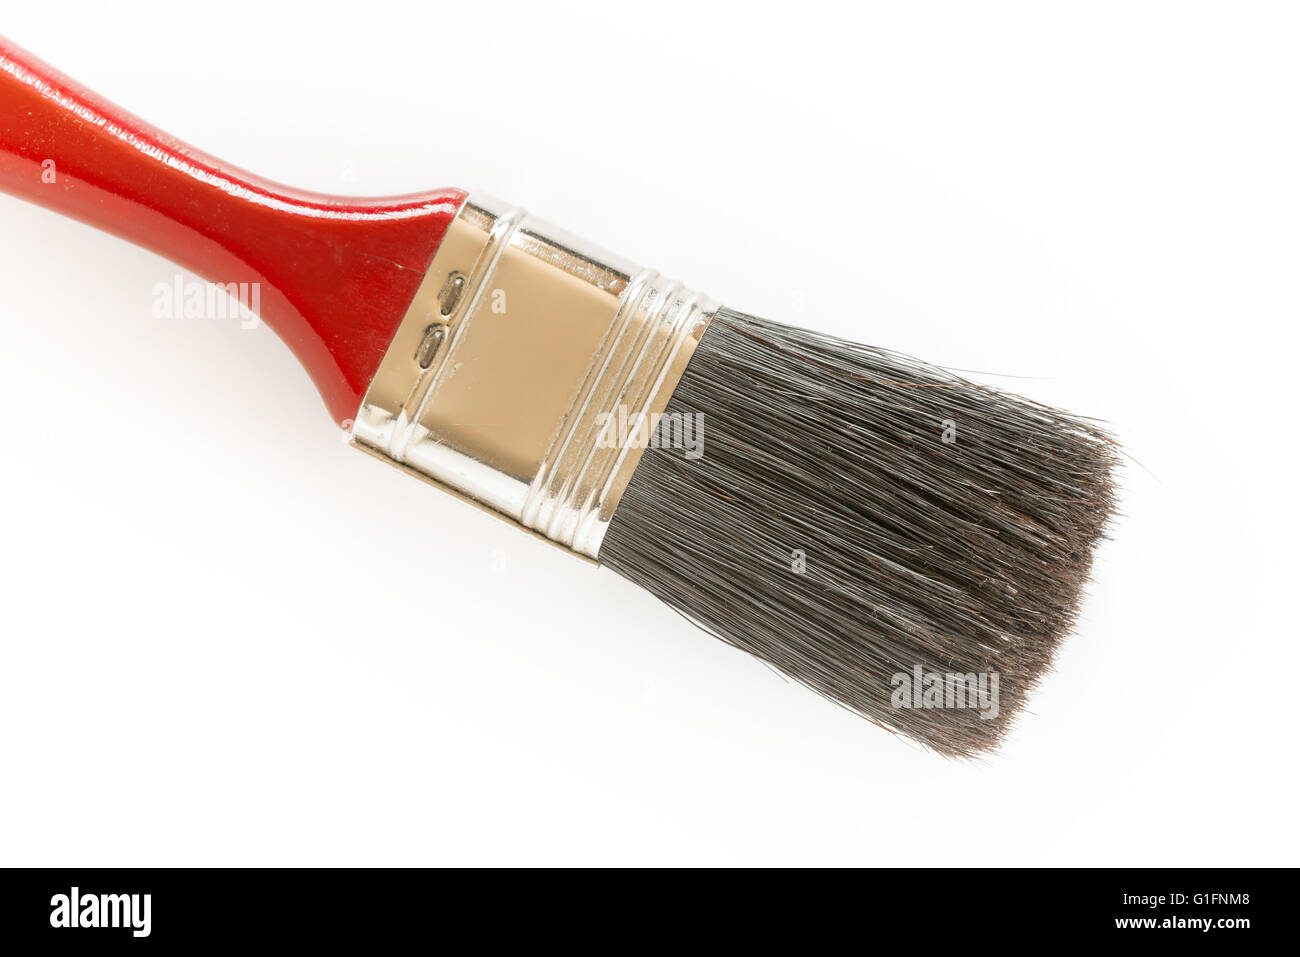 Dettaglio di un pennello rosso sable su sfondo bianco Foto Stock